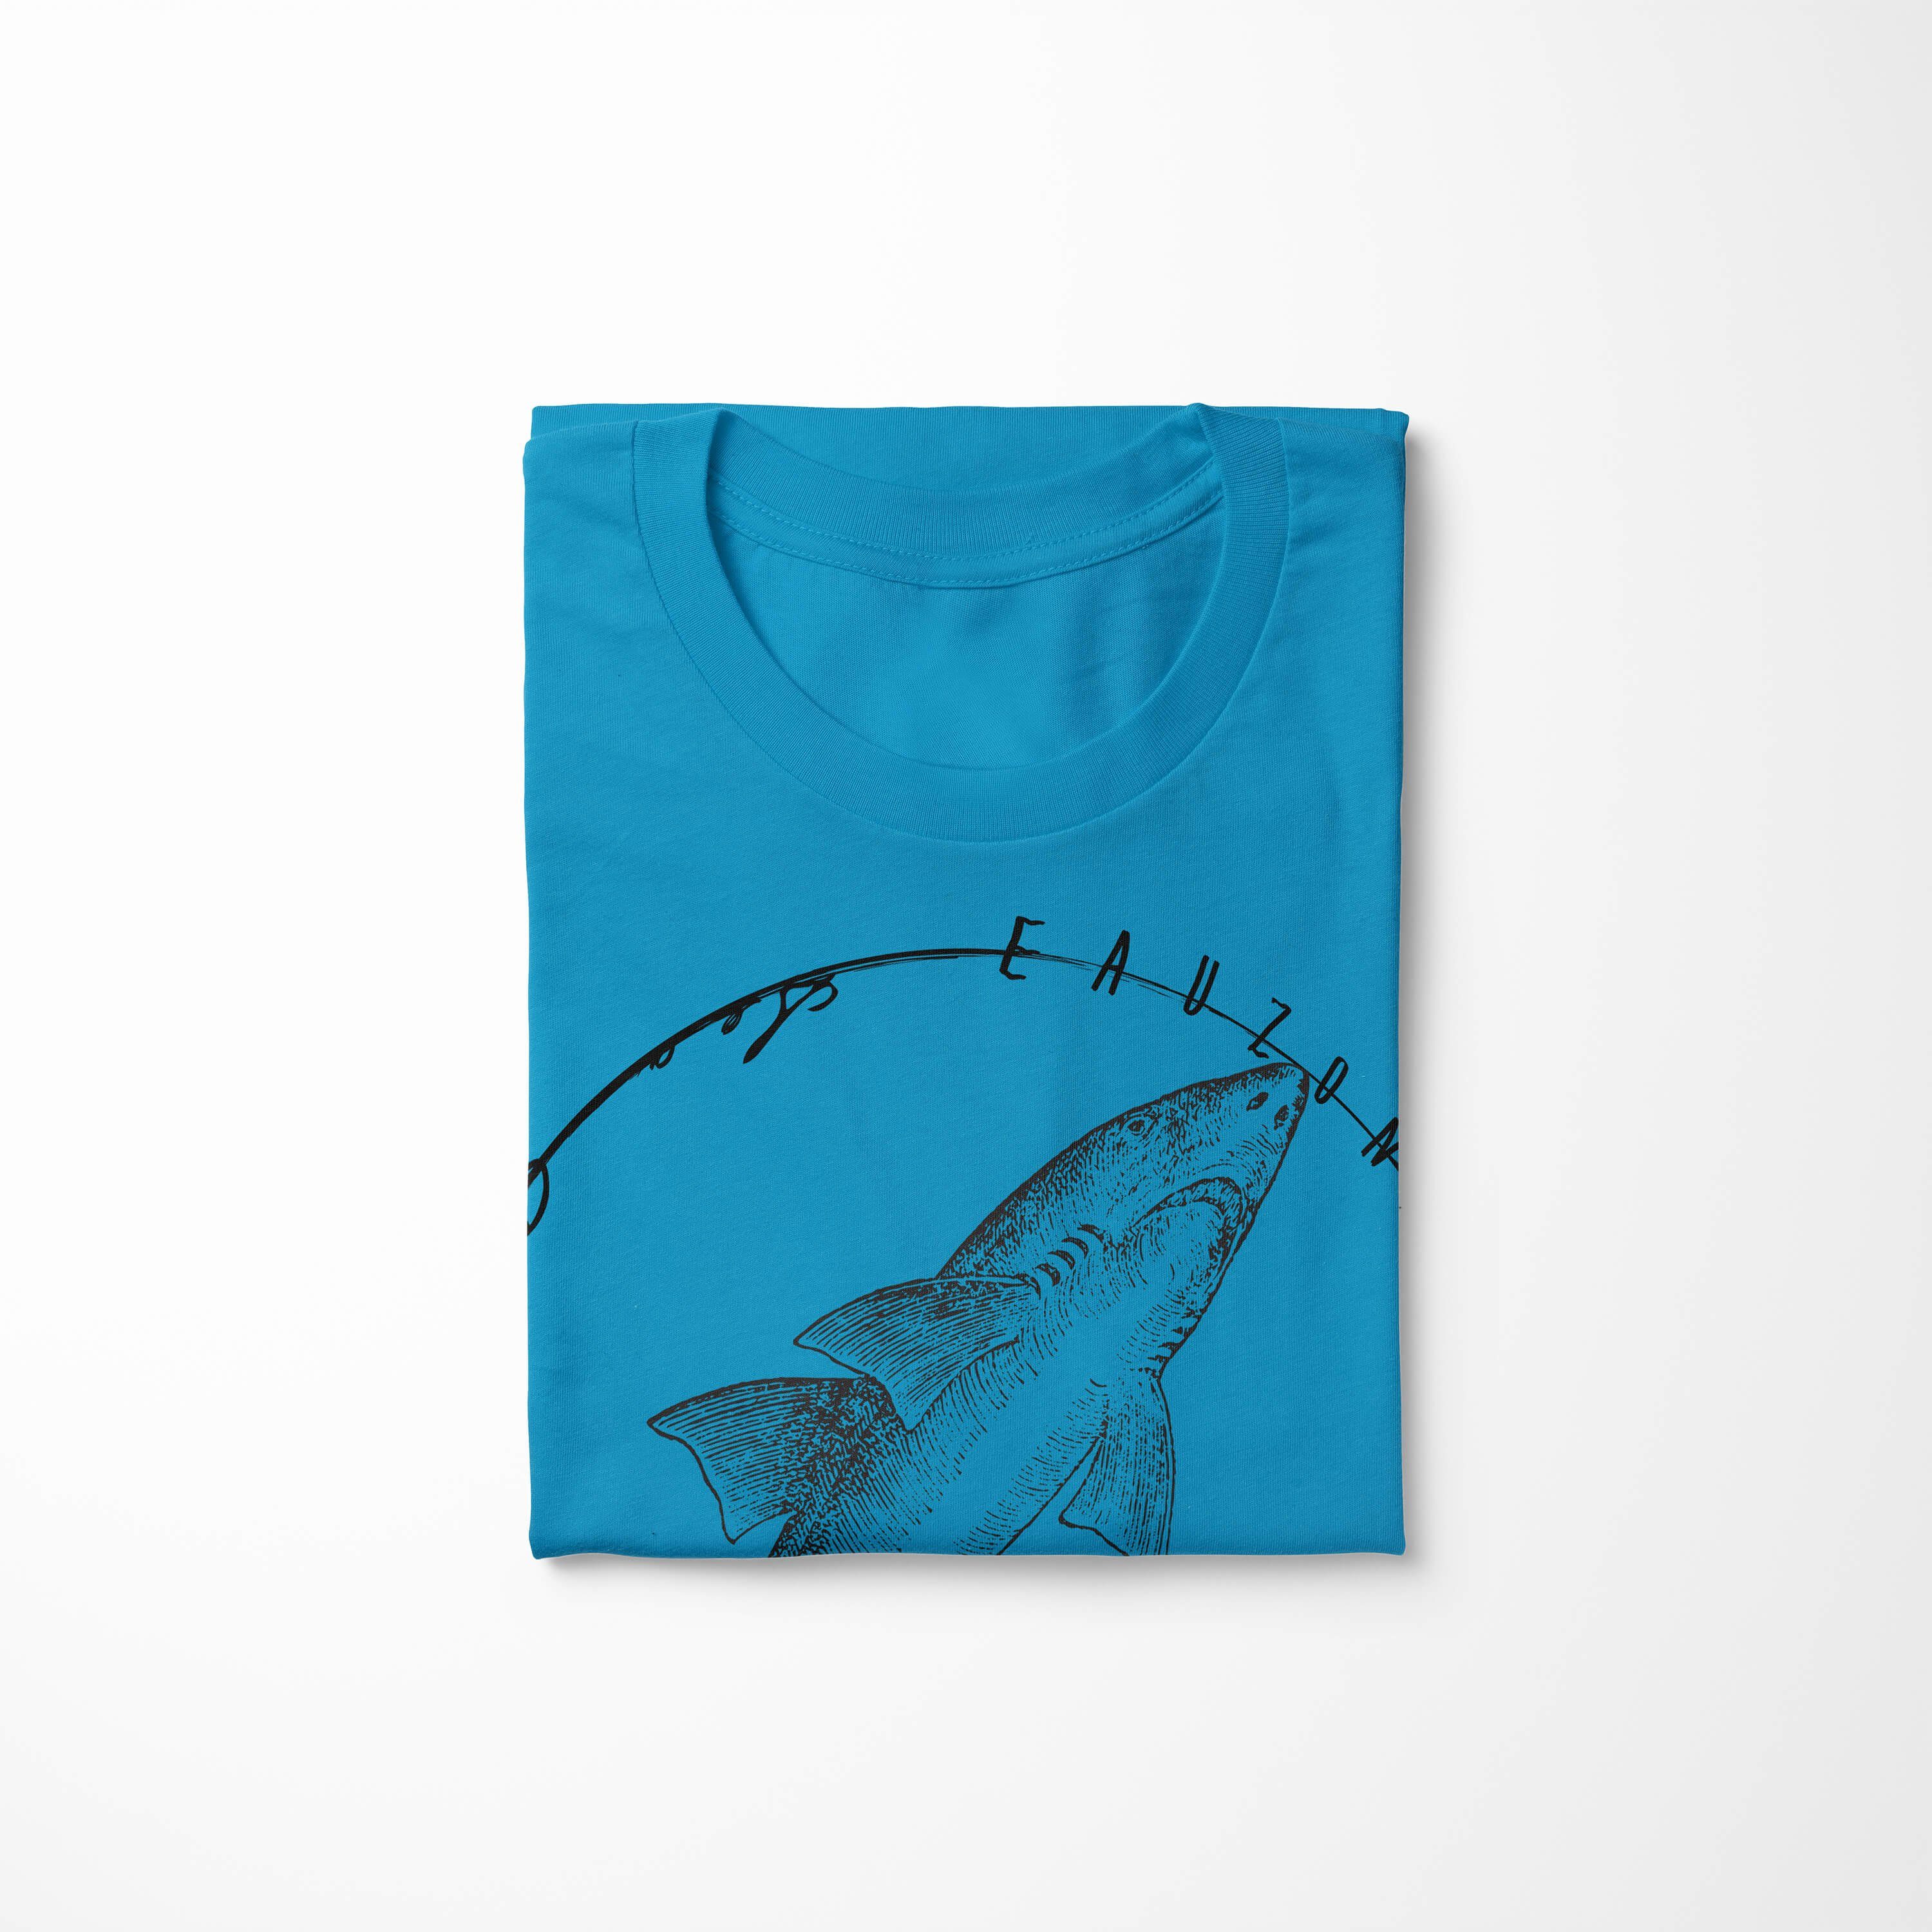 Struktur Serie: Sea Schnitt / T-Shirt Sea Creatures, Atoll Art und Fische sportlicher - feine Sinus 095 Tiefsee T-Shirt